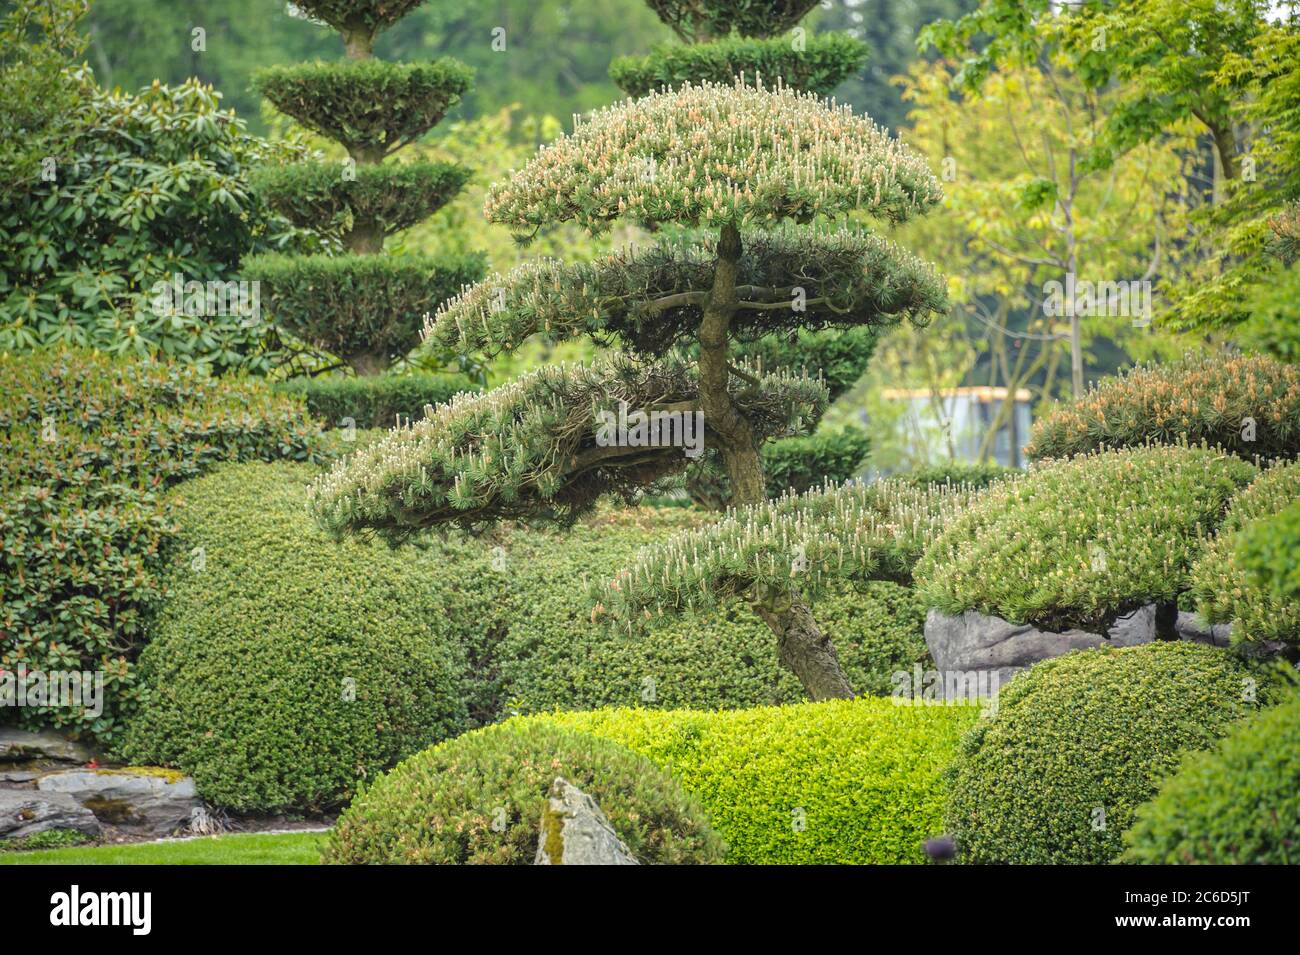 Japanischer Garten, Krummholz-Kiefer , Pinus mugo, Japanese garden, dwarf pine pine, Pinus mugo Stock Photo